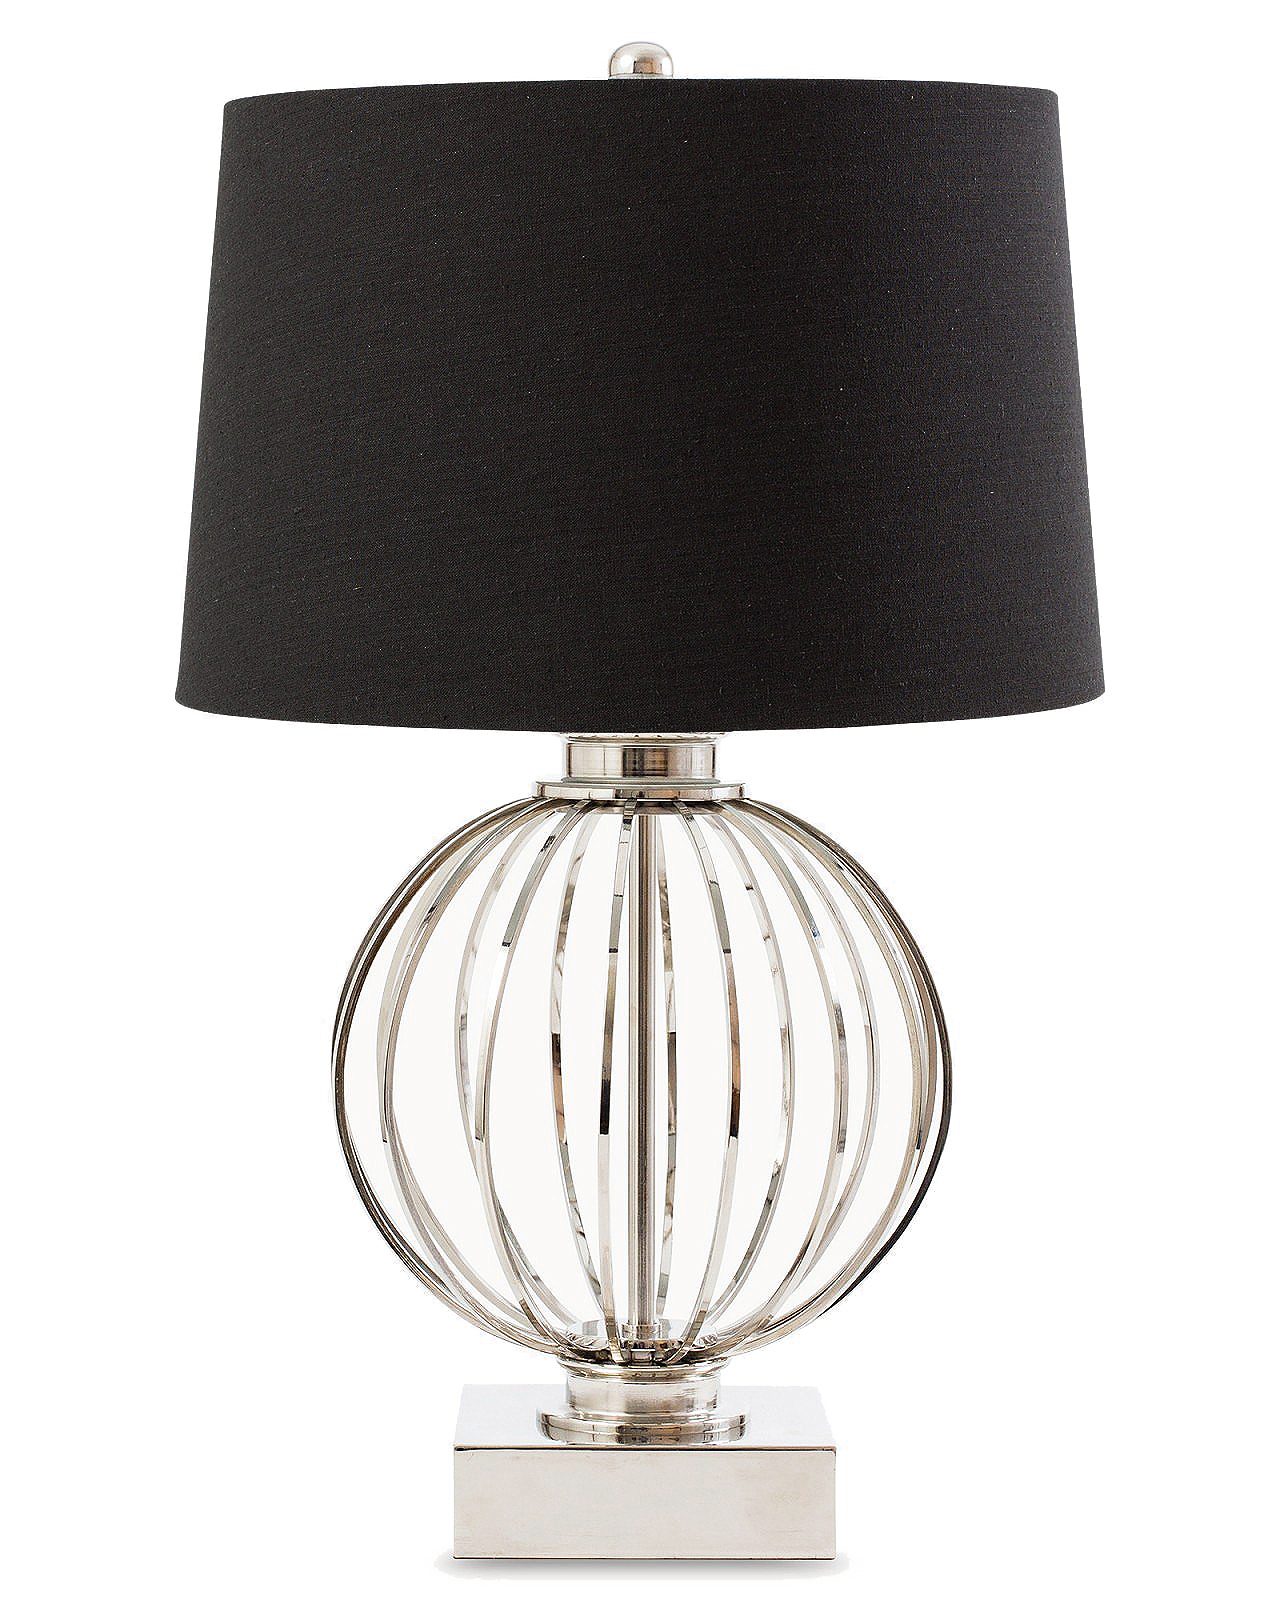 Современная настольная лампа "Клифтон" - это основание в виде серебряной сферы, установленной на металлическом пьедестале с черным абажуром